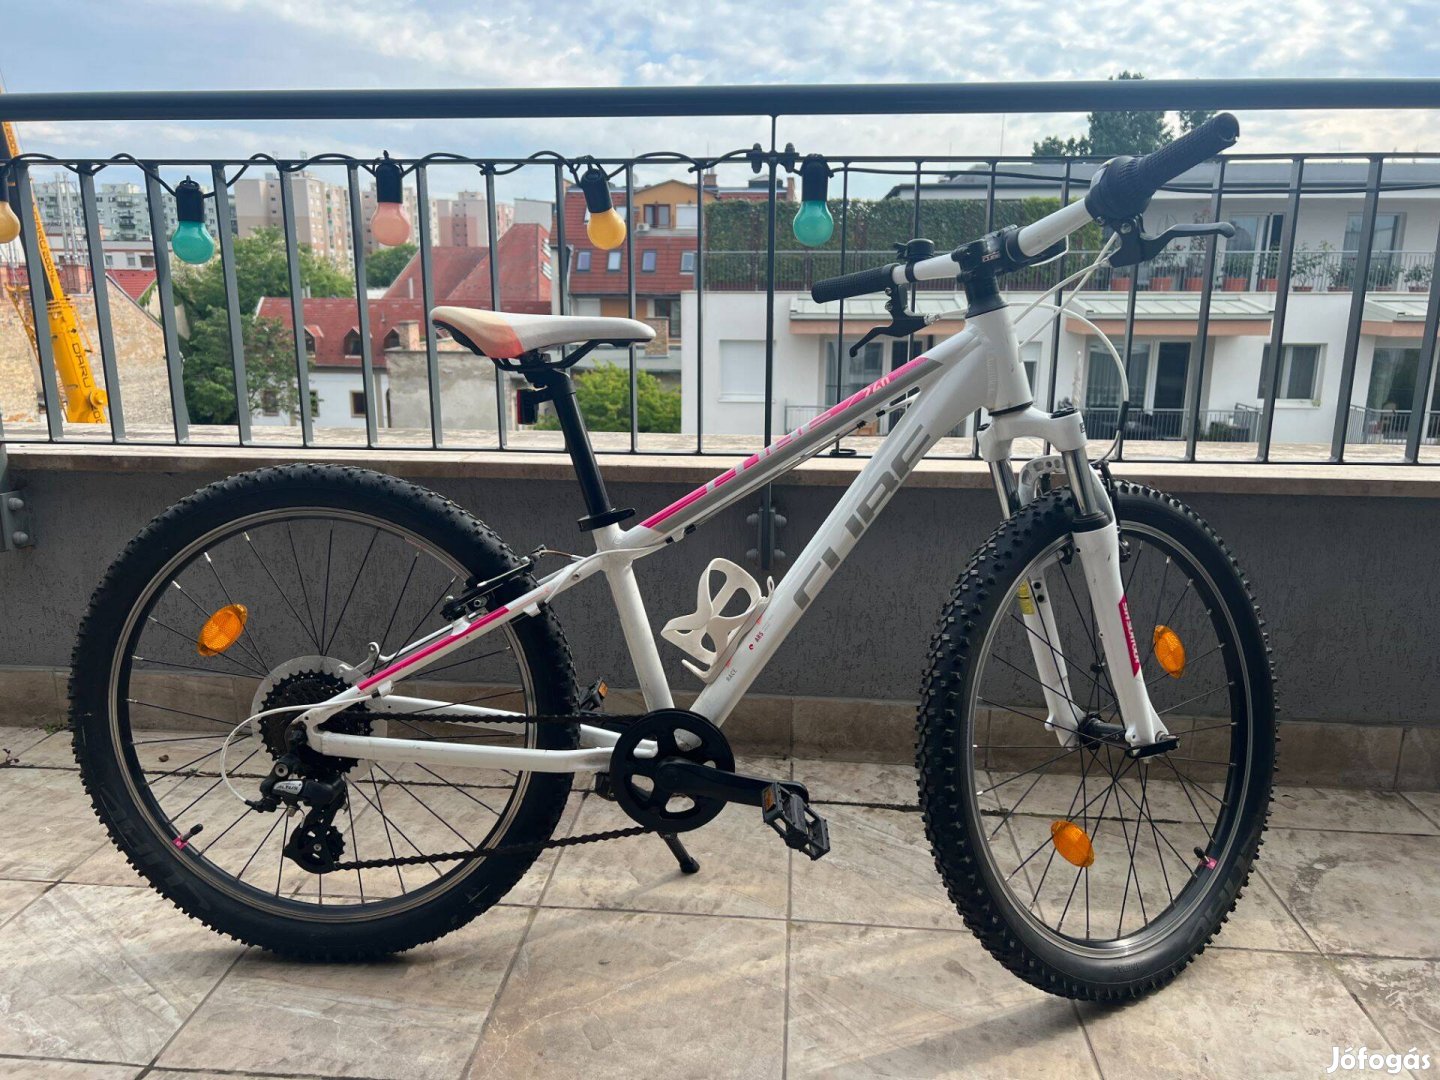 Eladó Cube 20-as lány kerékpár